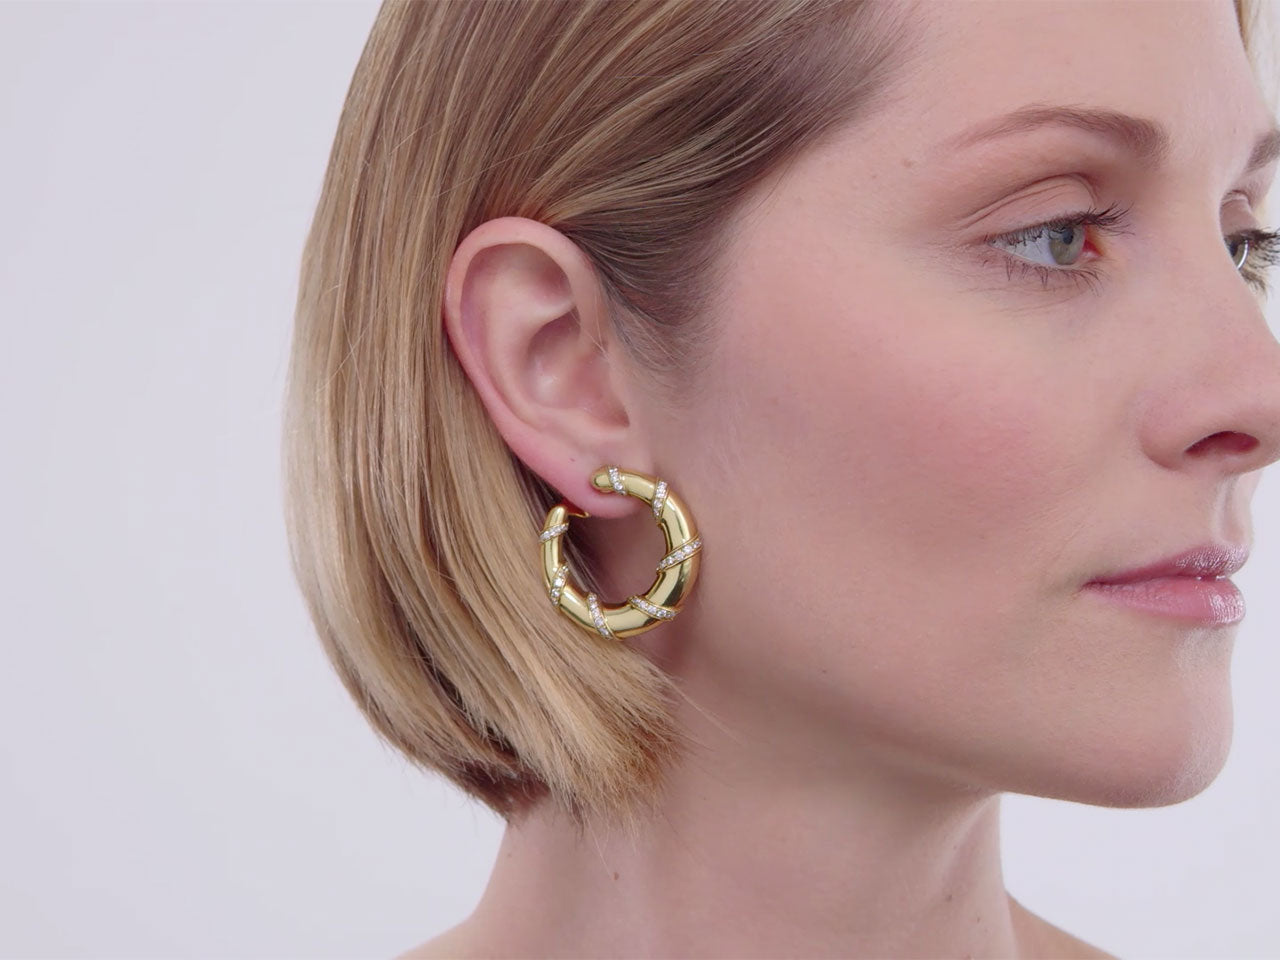 Diamond Swirl Earrings in 18k